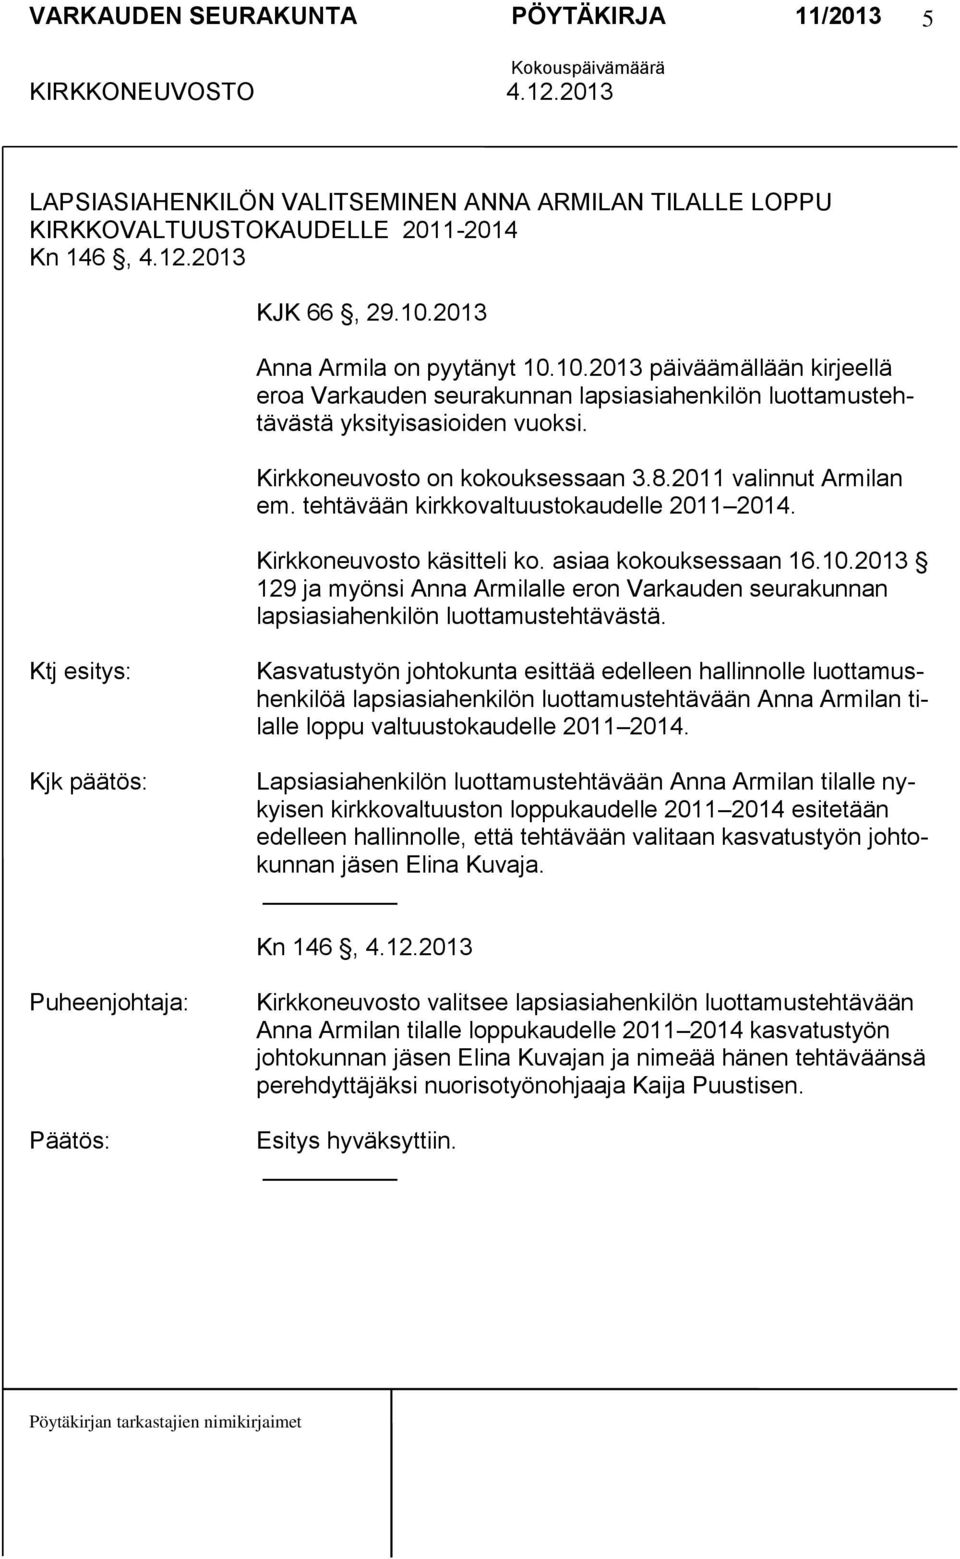 2011 valinnut Armilan em. tehtävään kirkkovaltuustokaudelle 2011 2014. Kirkkoneuvosto käsitteli ko. asiaa kokouksessaan 16.10.